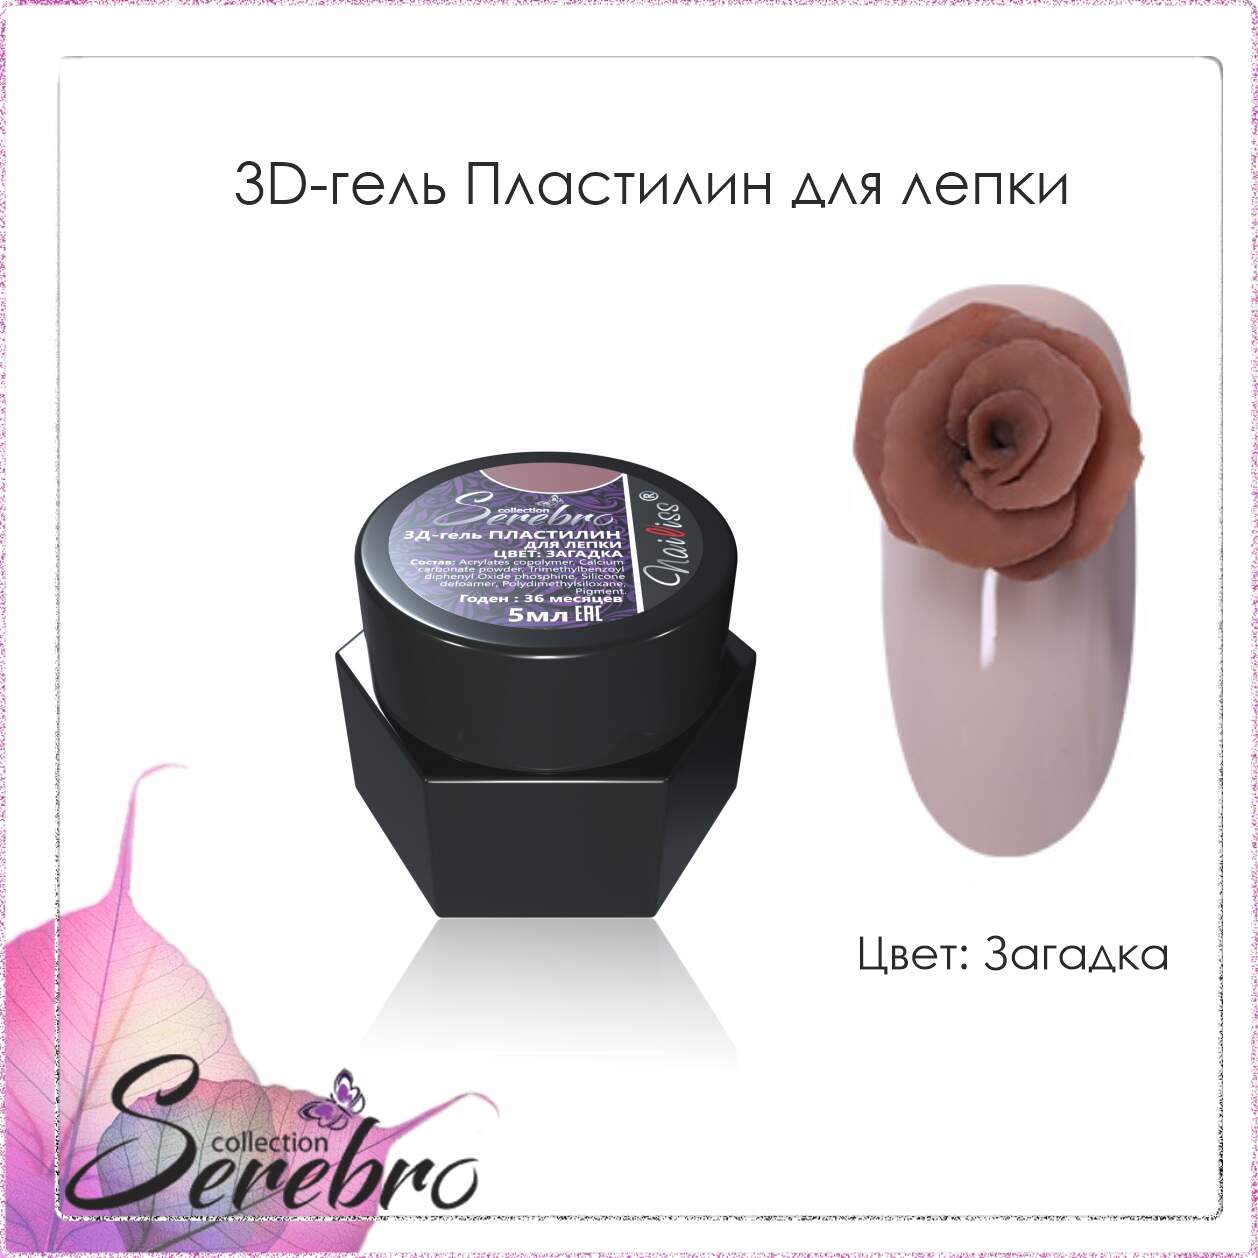 3D гель Пластилин для лепки "Serebro" (загадка), 5 мл